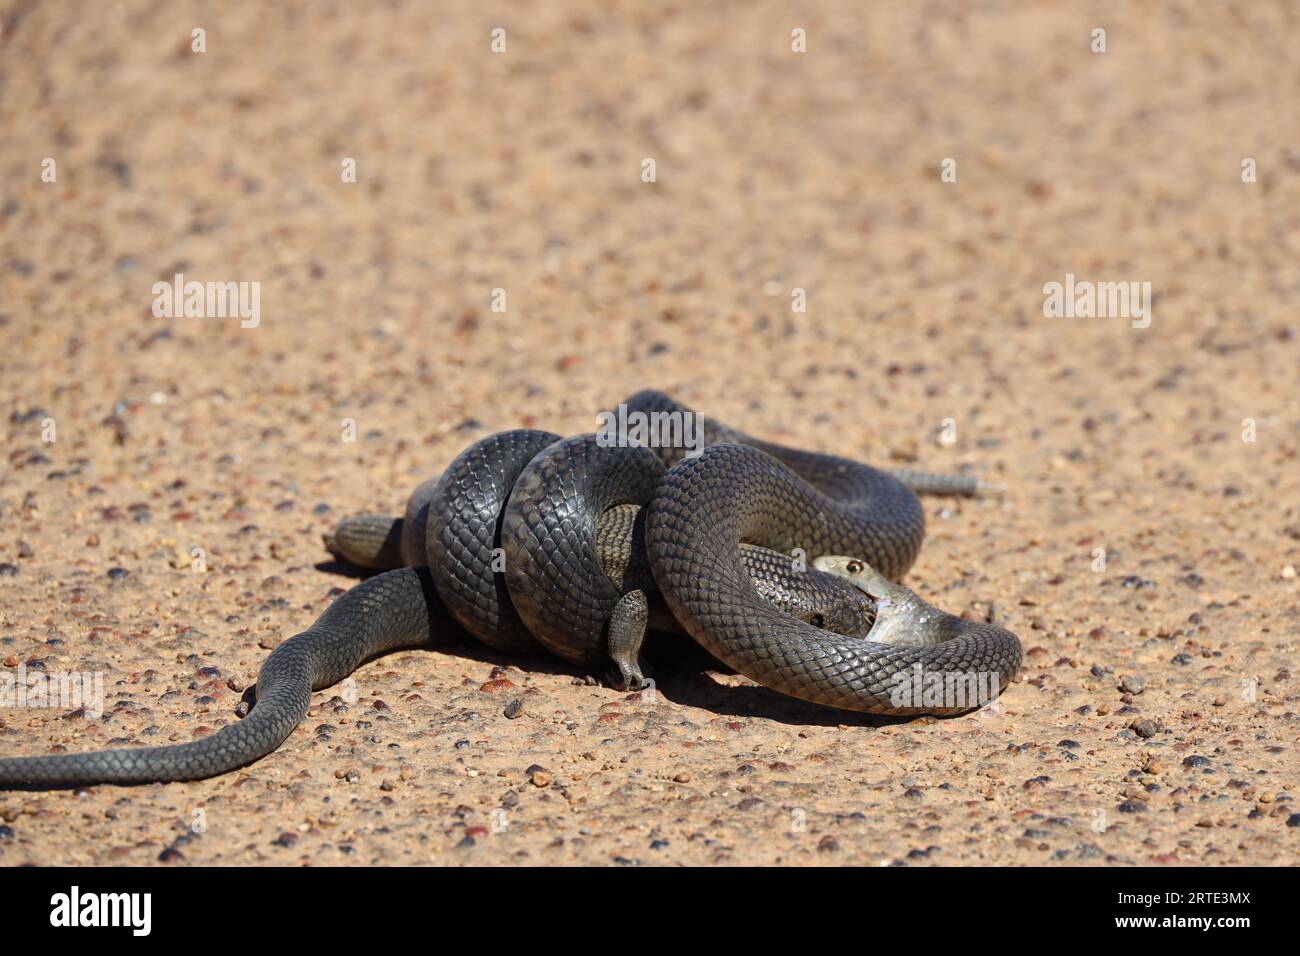 Eine Nahaufnahme einer dugiten Schlange in der Größe ihrer Mahlzeit, die sich zum Verzehr vorbereitet Stockfoto